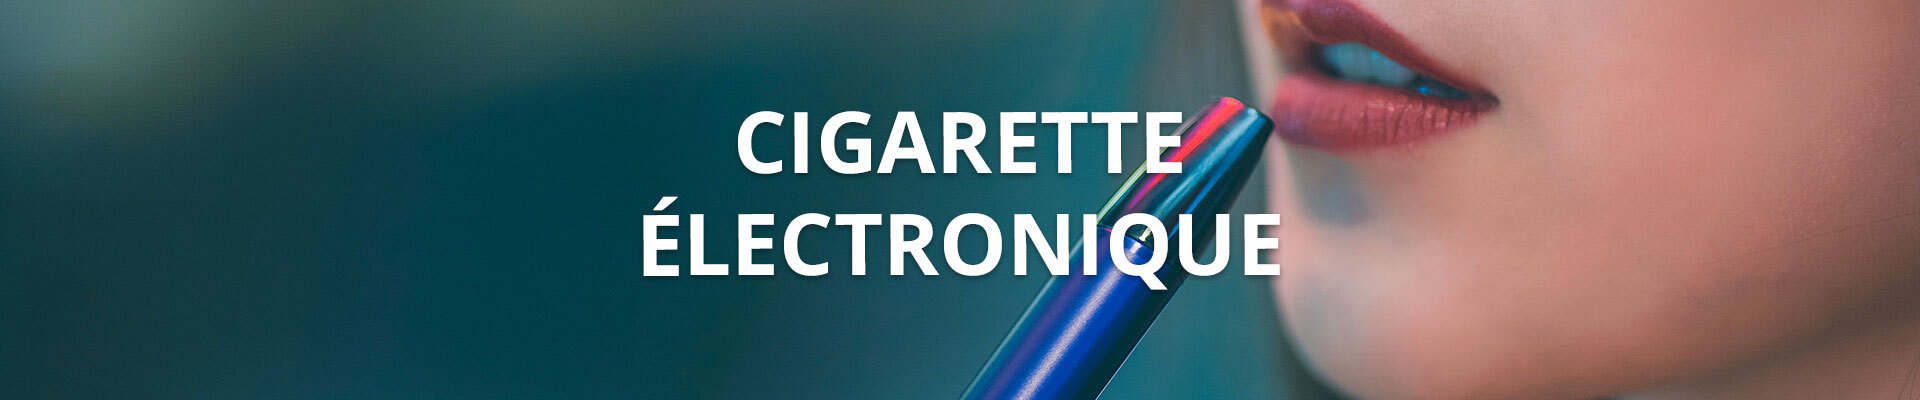 Cigarette électronique